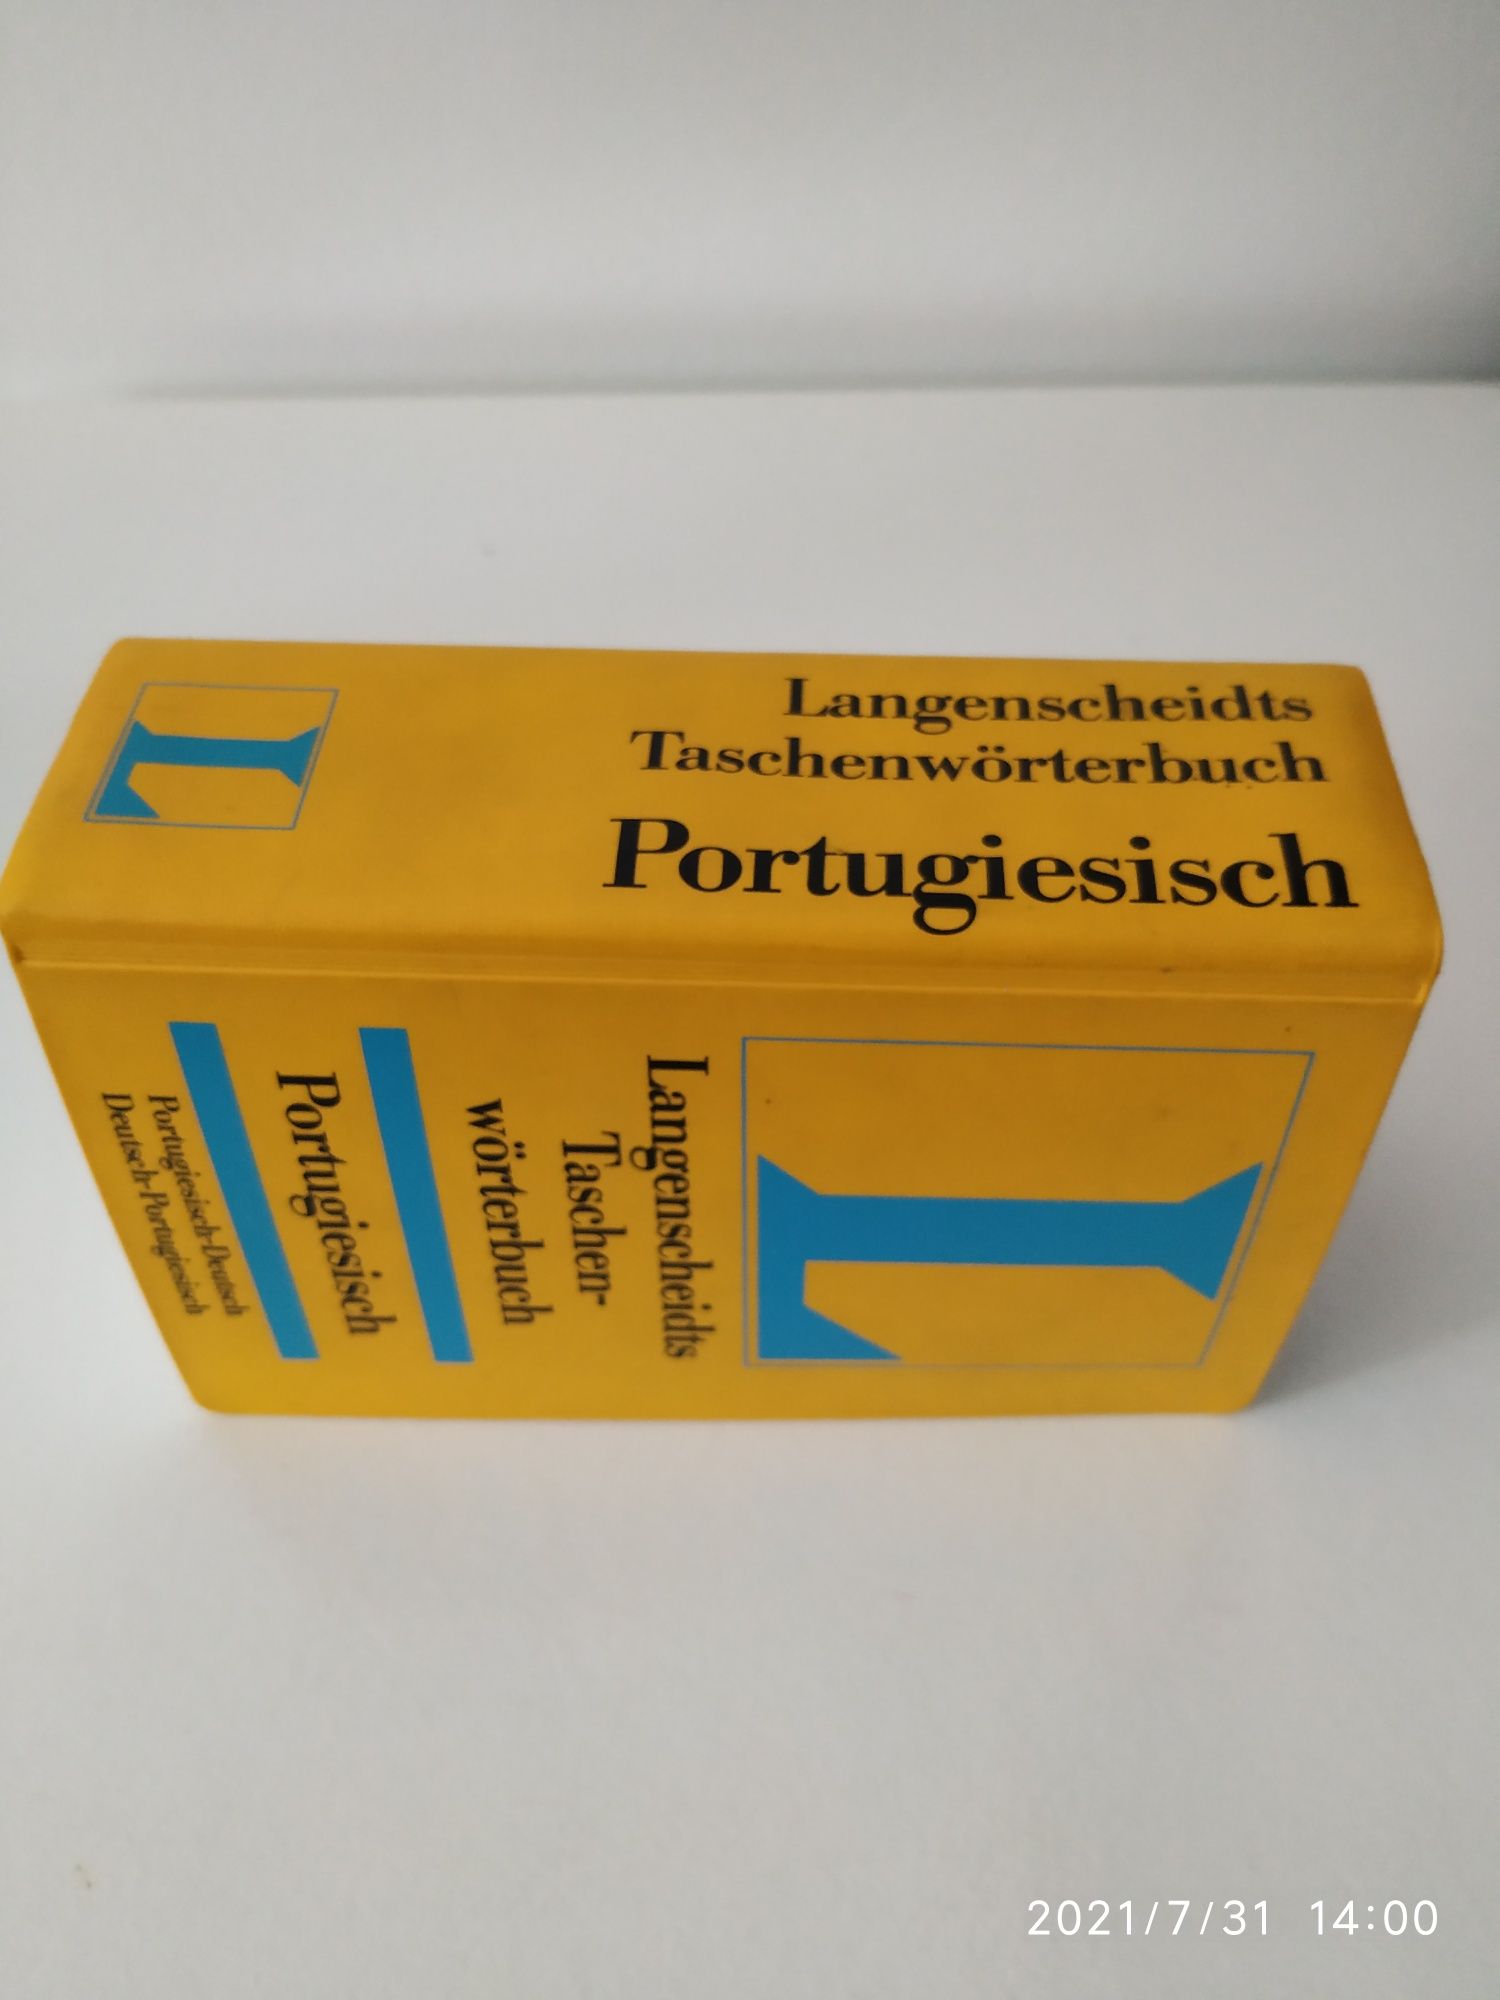 Dicionário Português Alemão e Alemão Português da Langenscheidts